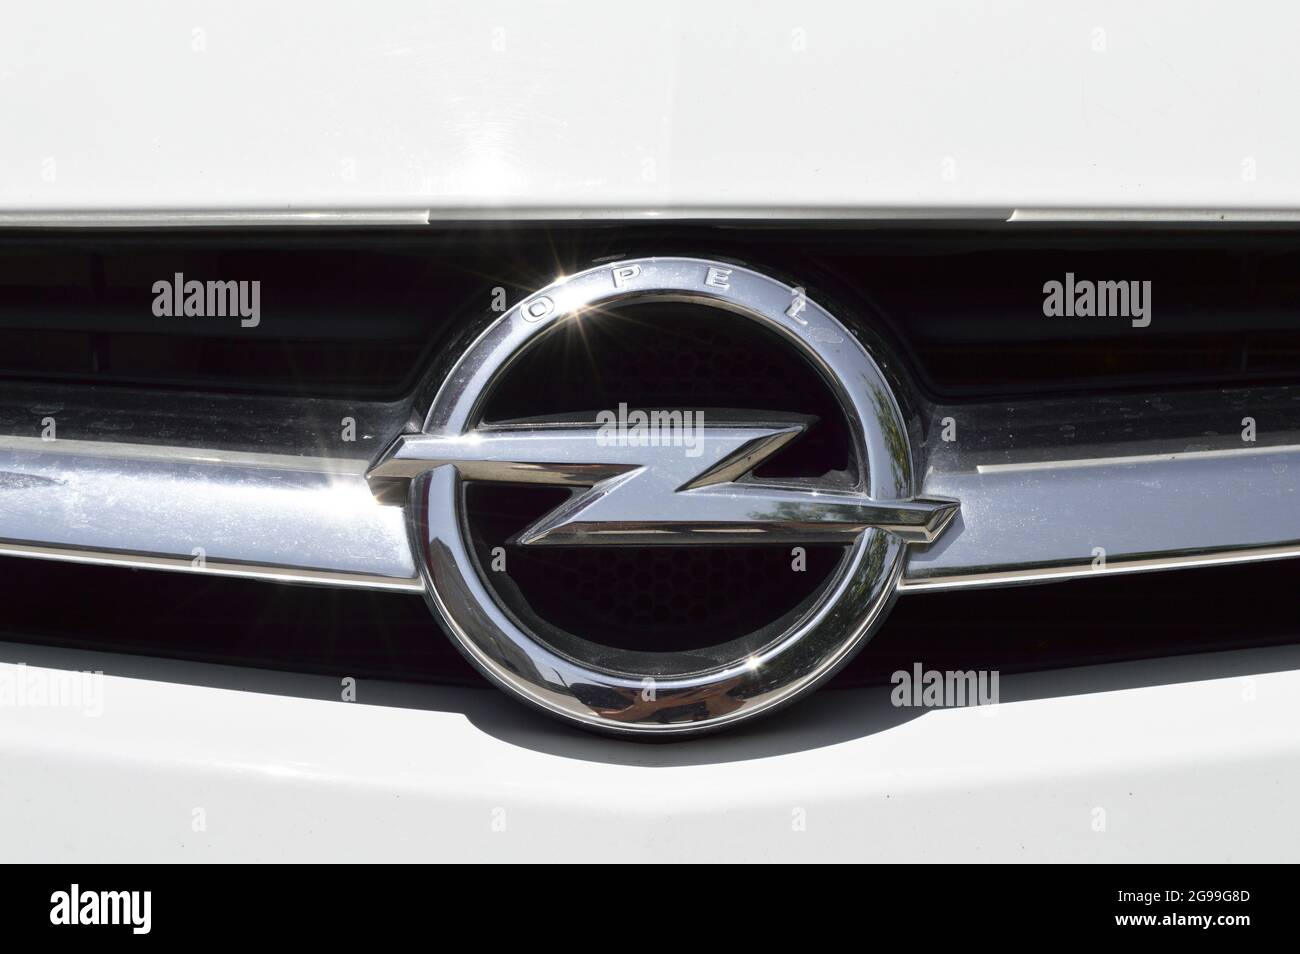 Opel car emblem Stock Photo - Alamy